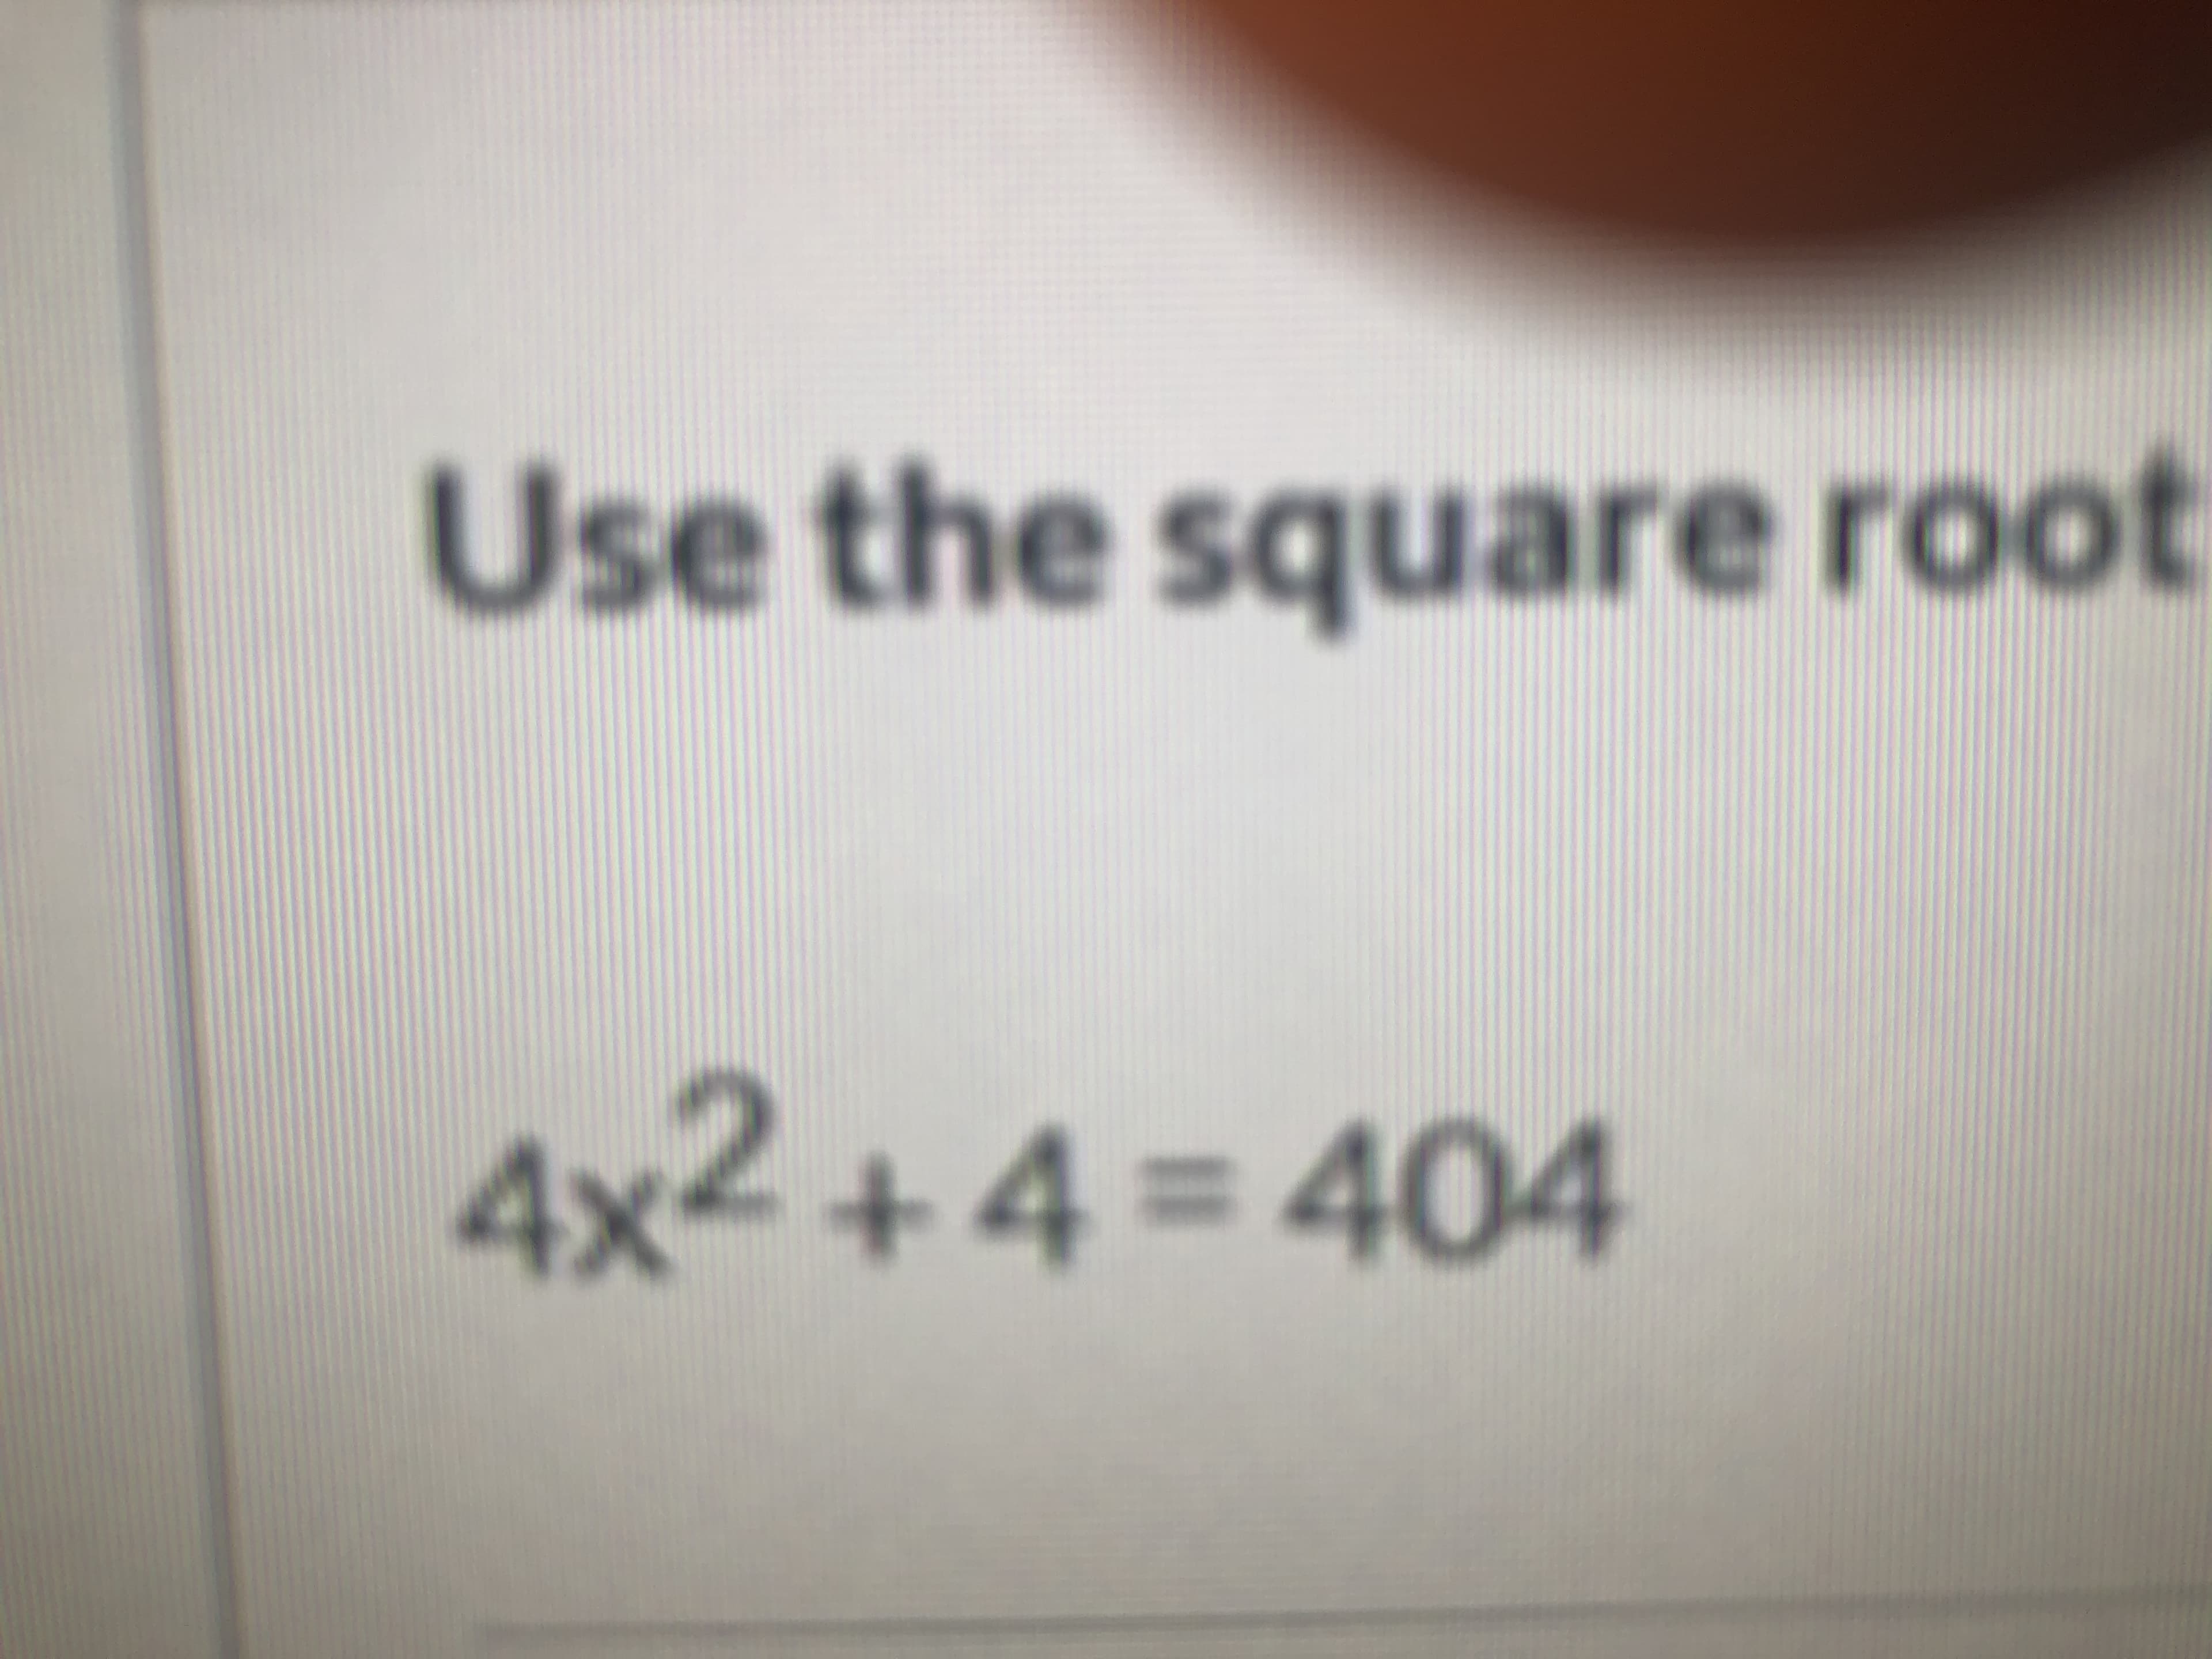 4x2 +4 = 404
